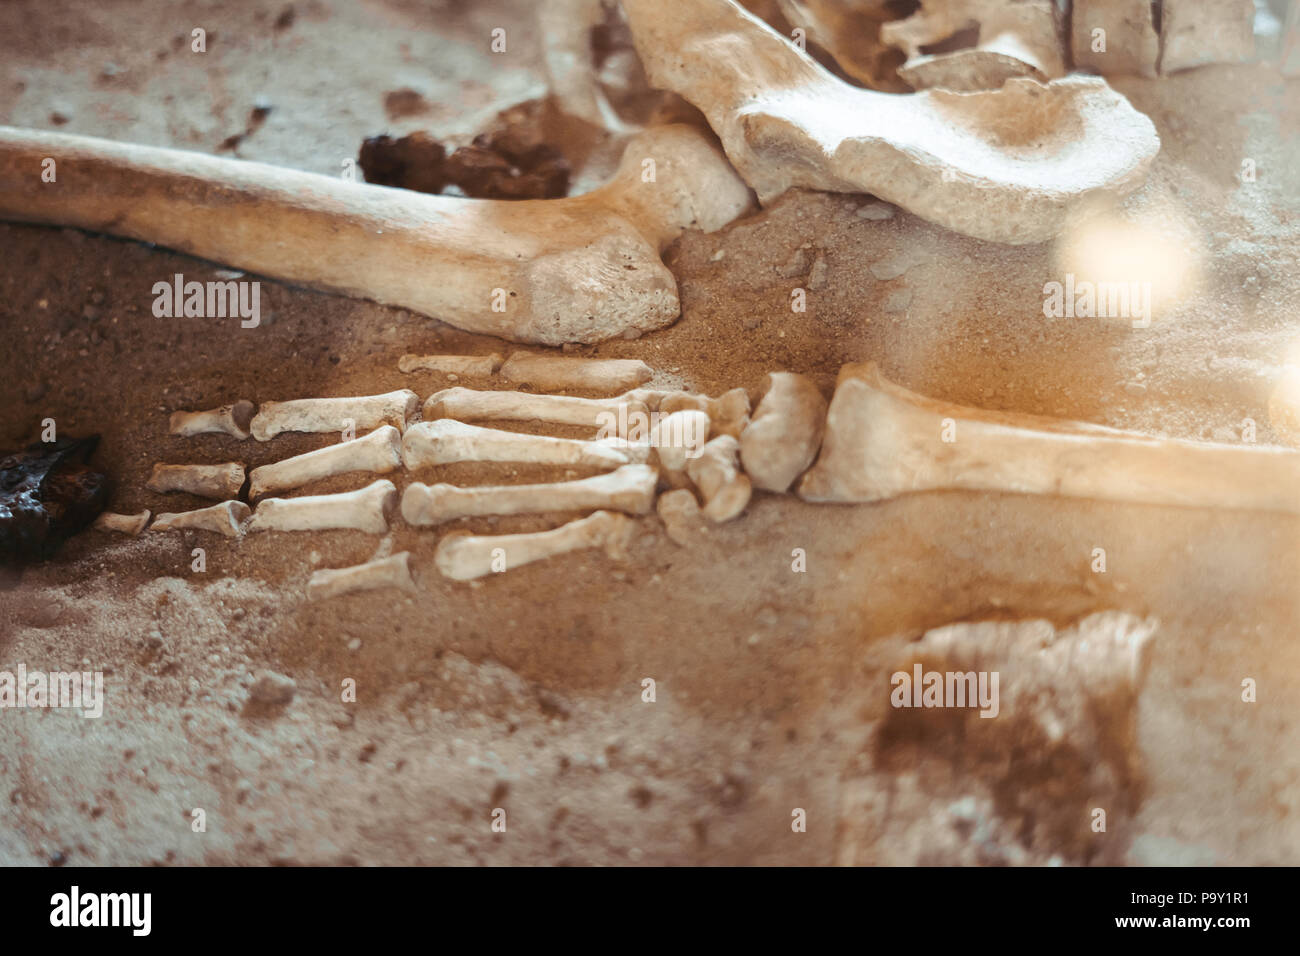 Archäologische Ausgrabungen und Funde aus Knochen der ein Skelett in einer menschlichen Beerdigung, ein Detail der historischen Forschung, die Vorgeschichte. Stockfoto